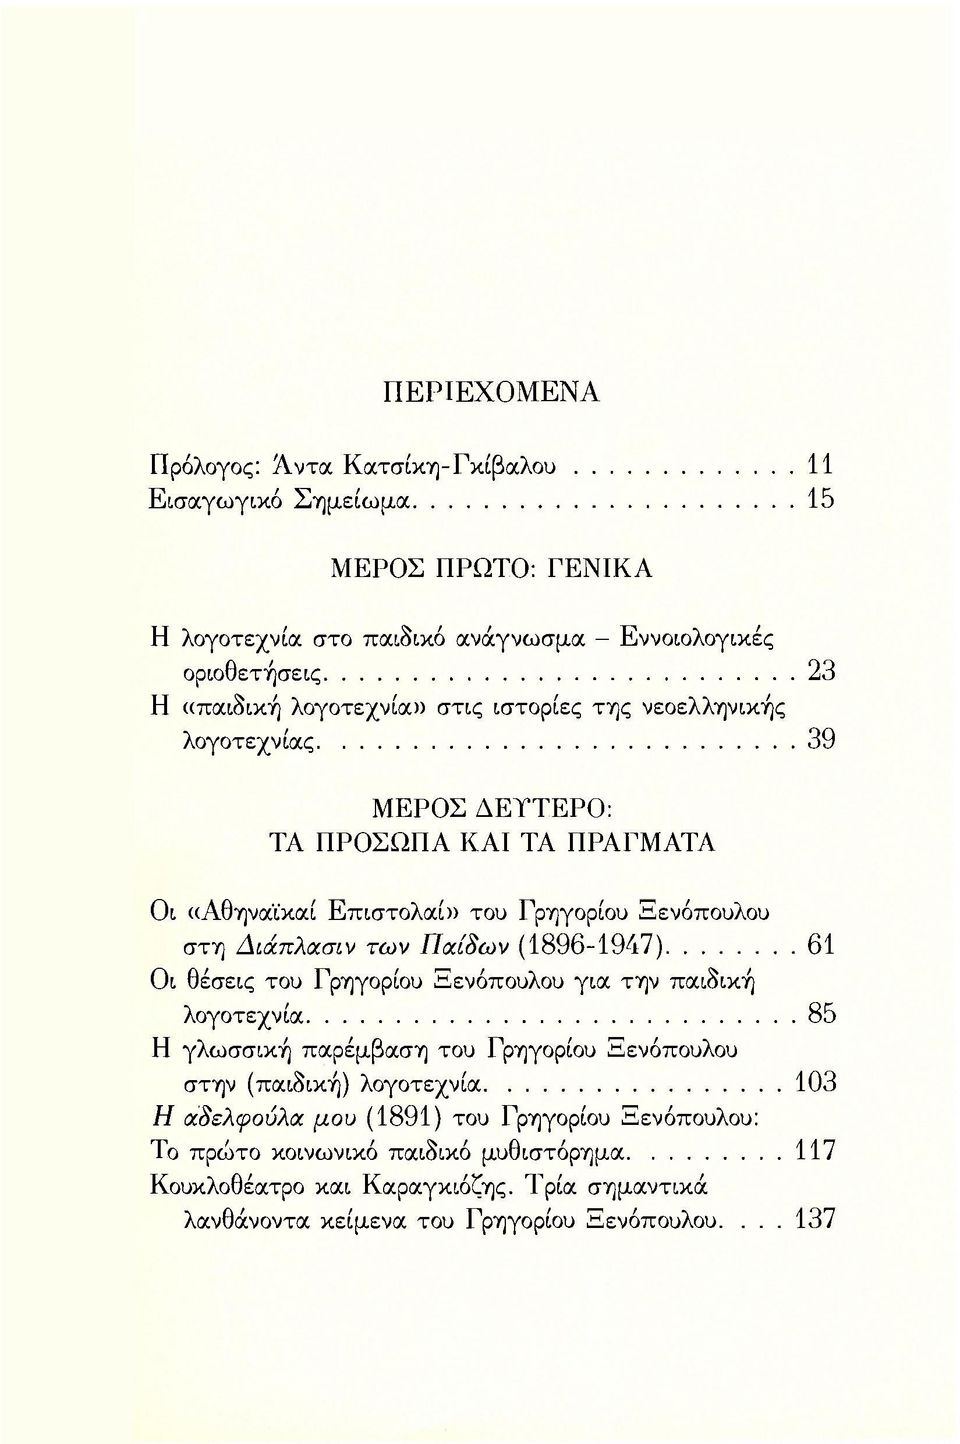 Παίδων (1896-1947) 61 Οι θέσεις του Γρηγορίου Ξενόπουλου για την παιδική λογοτεχνία 85 Η γλωσσική παρέμβαση του Γρηγορίου Ξενόπουλου στην (παιδική) λογοτεχνία 103 Η